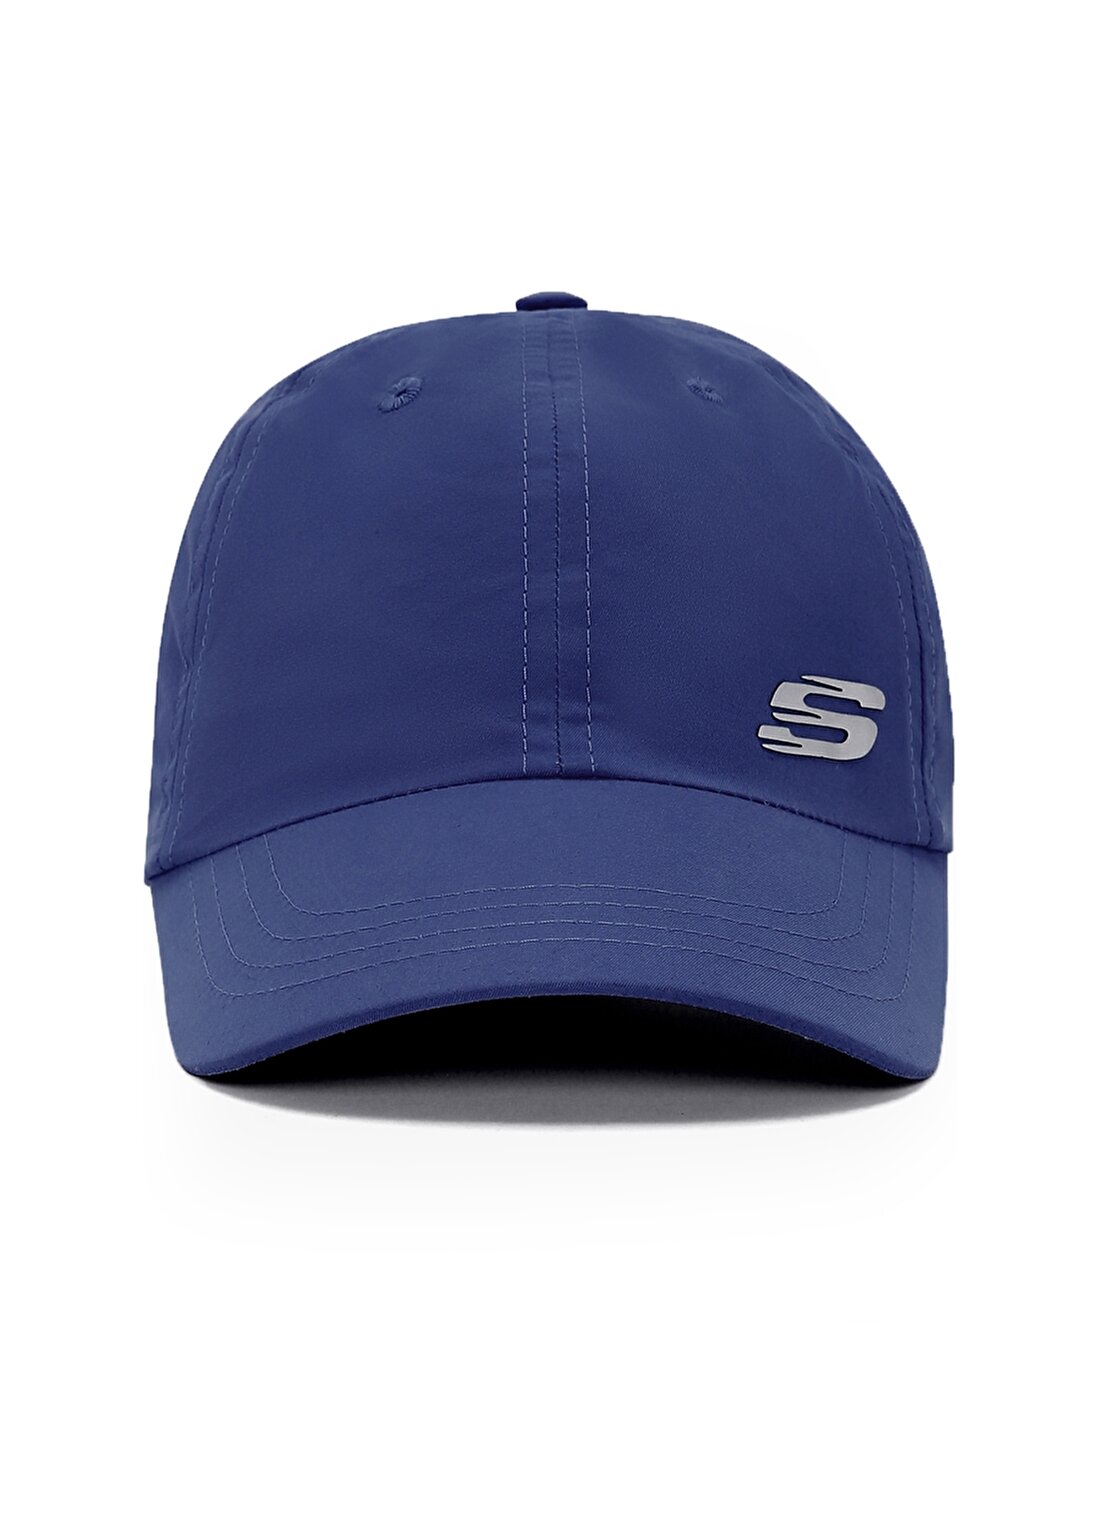 Skechers Lacivert Unisex Şapka S231481-408 M Summer Acc Cap Cap